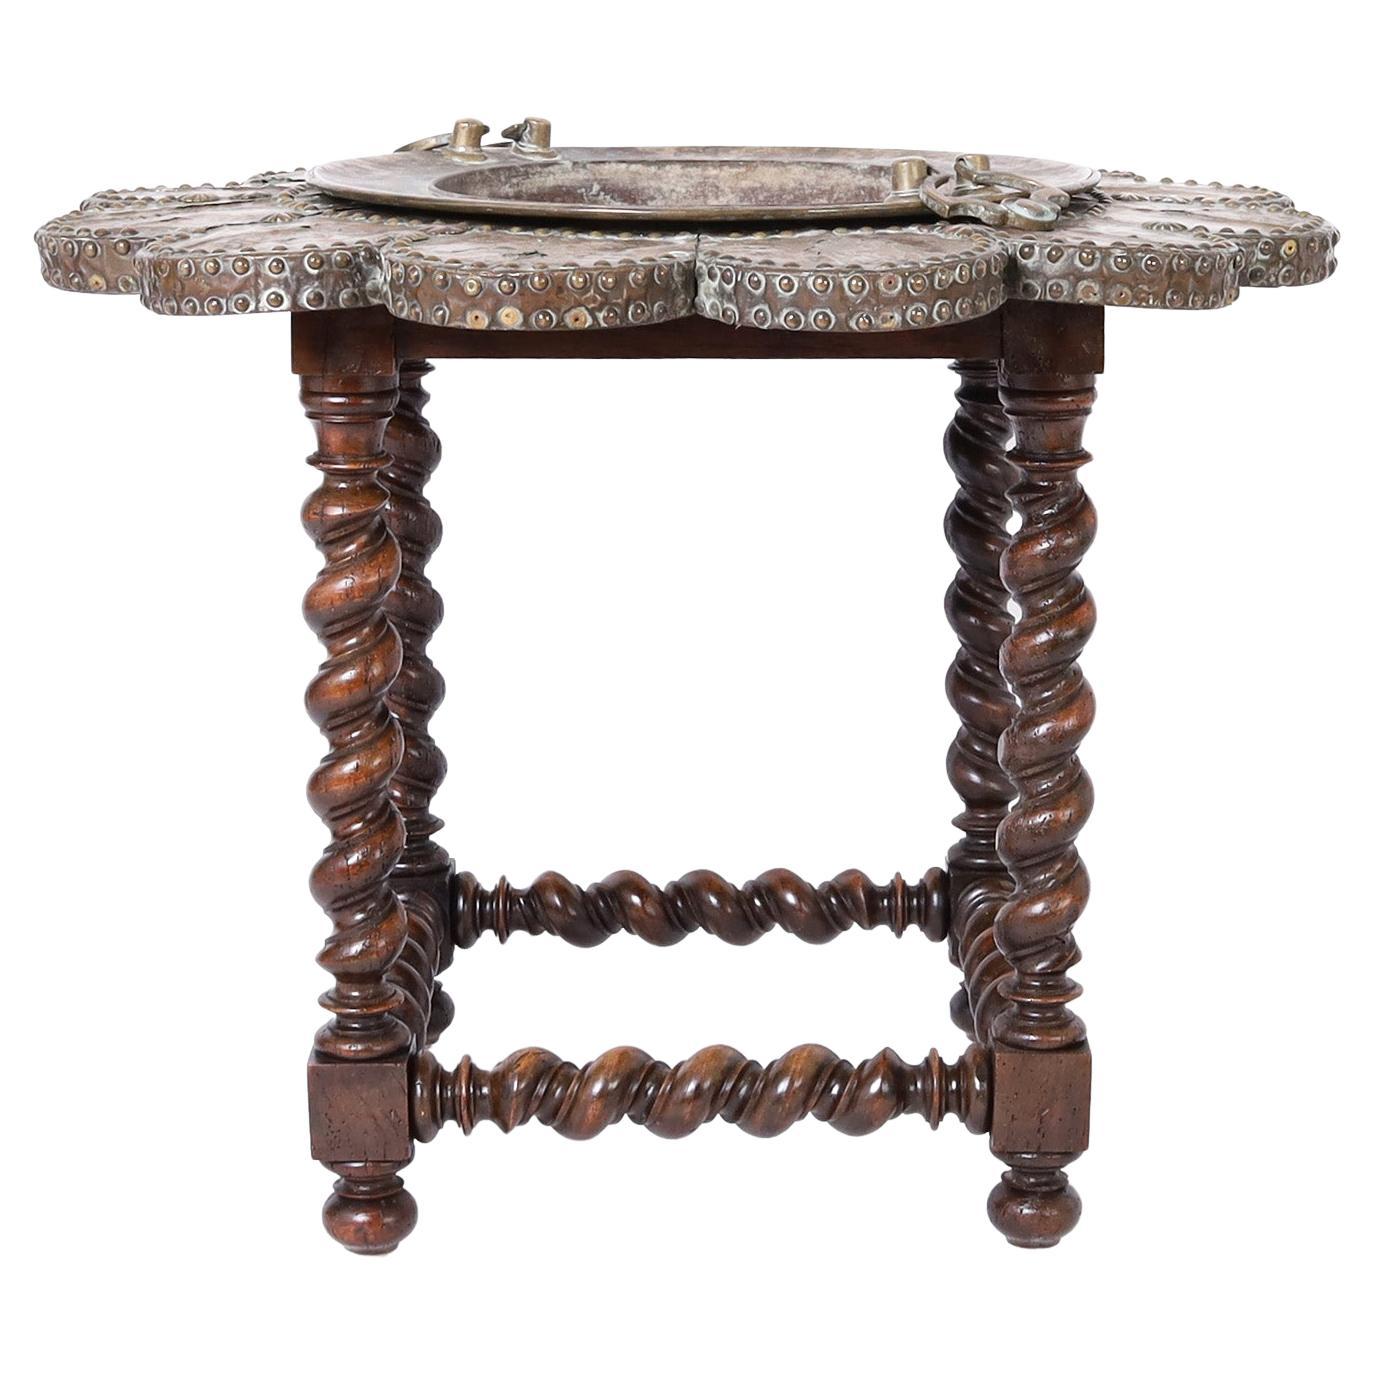 Brazier-Tisch aus Kupfer, Messing und Holz